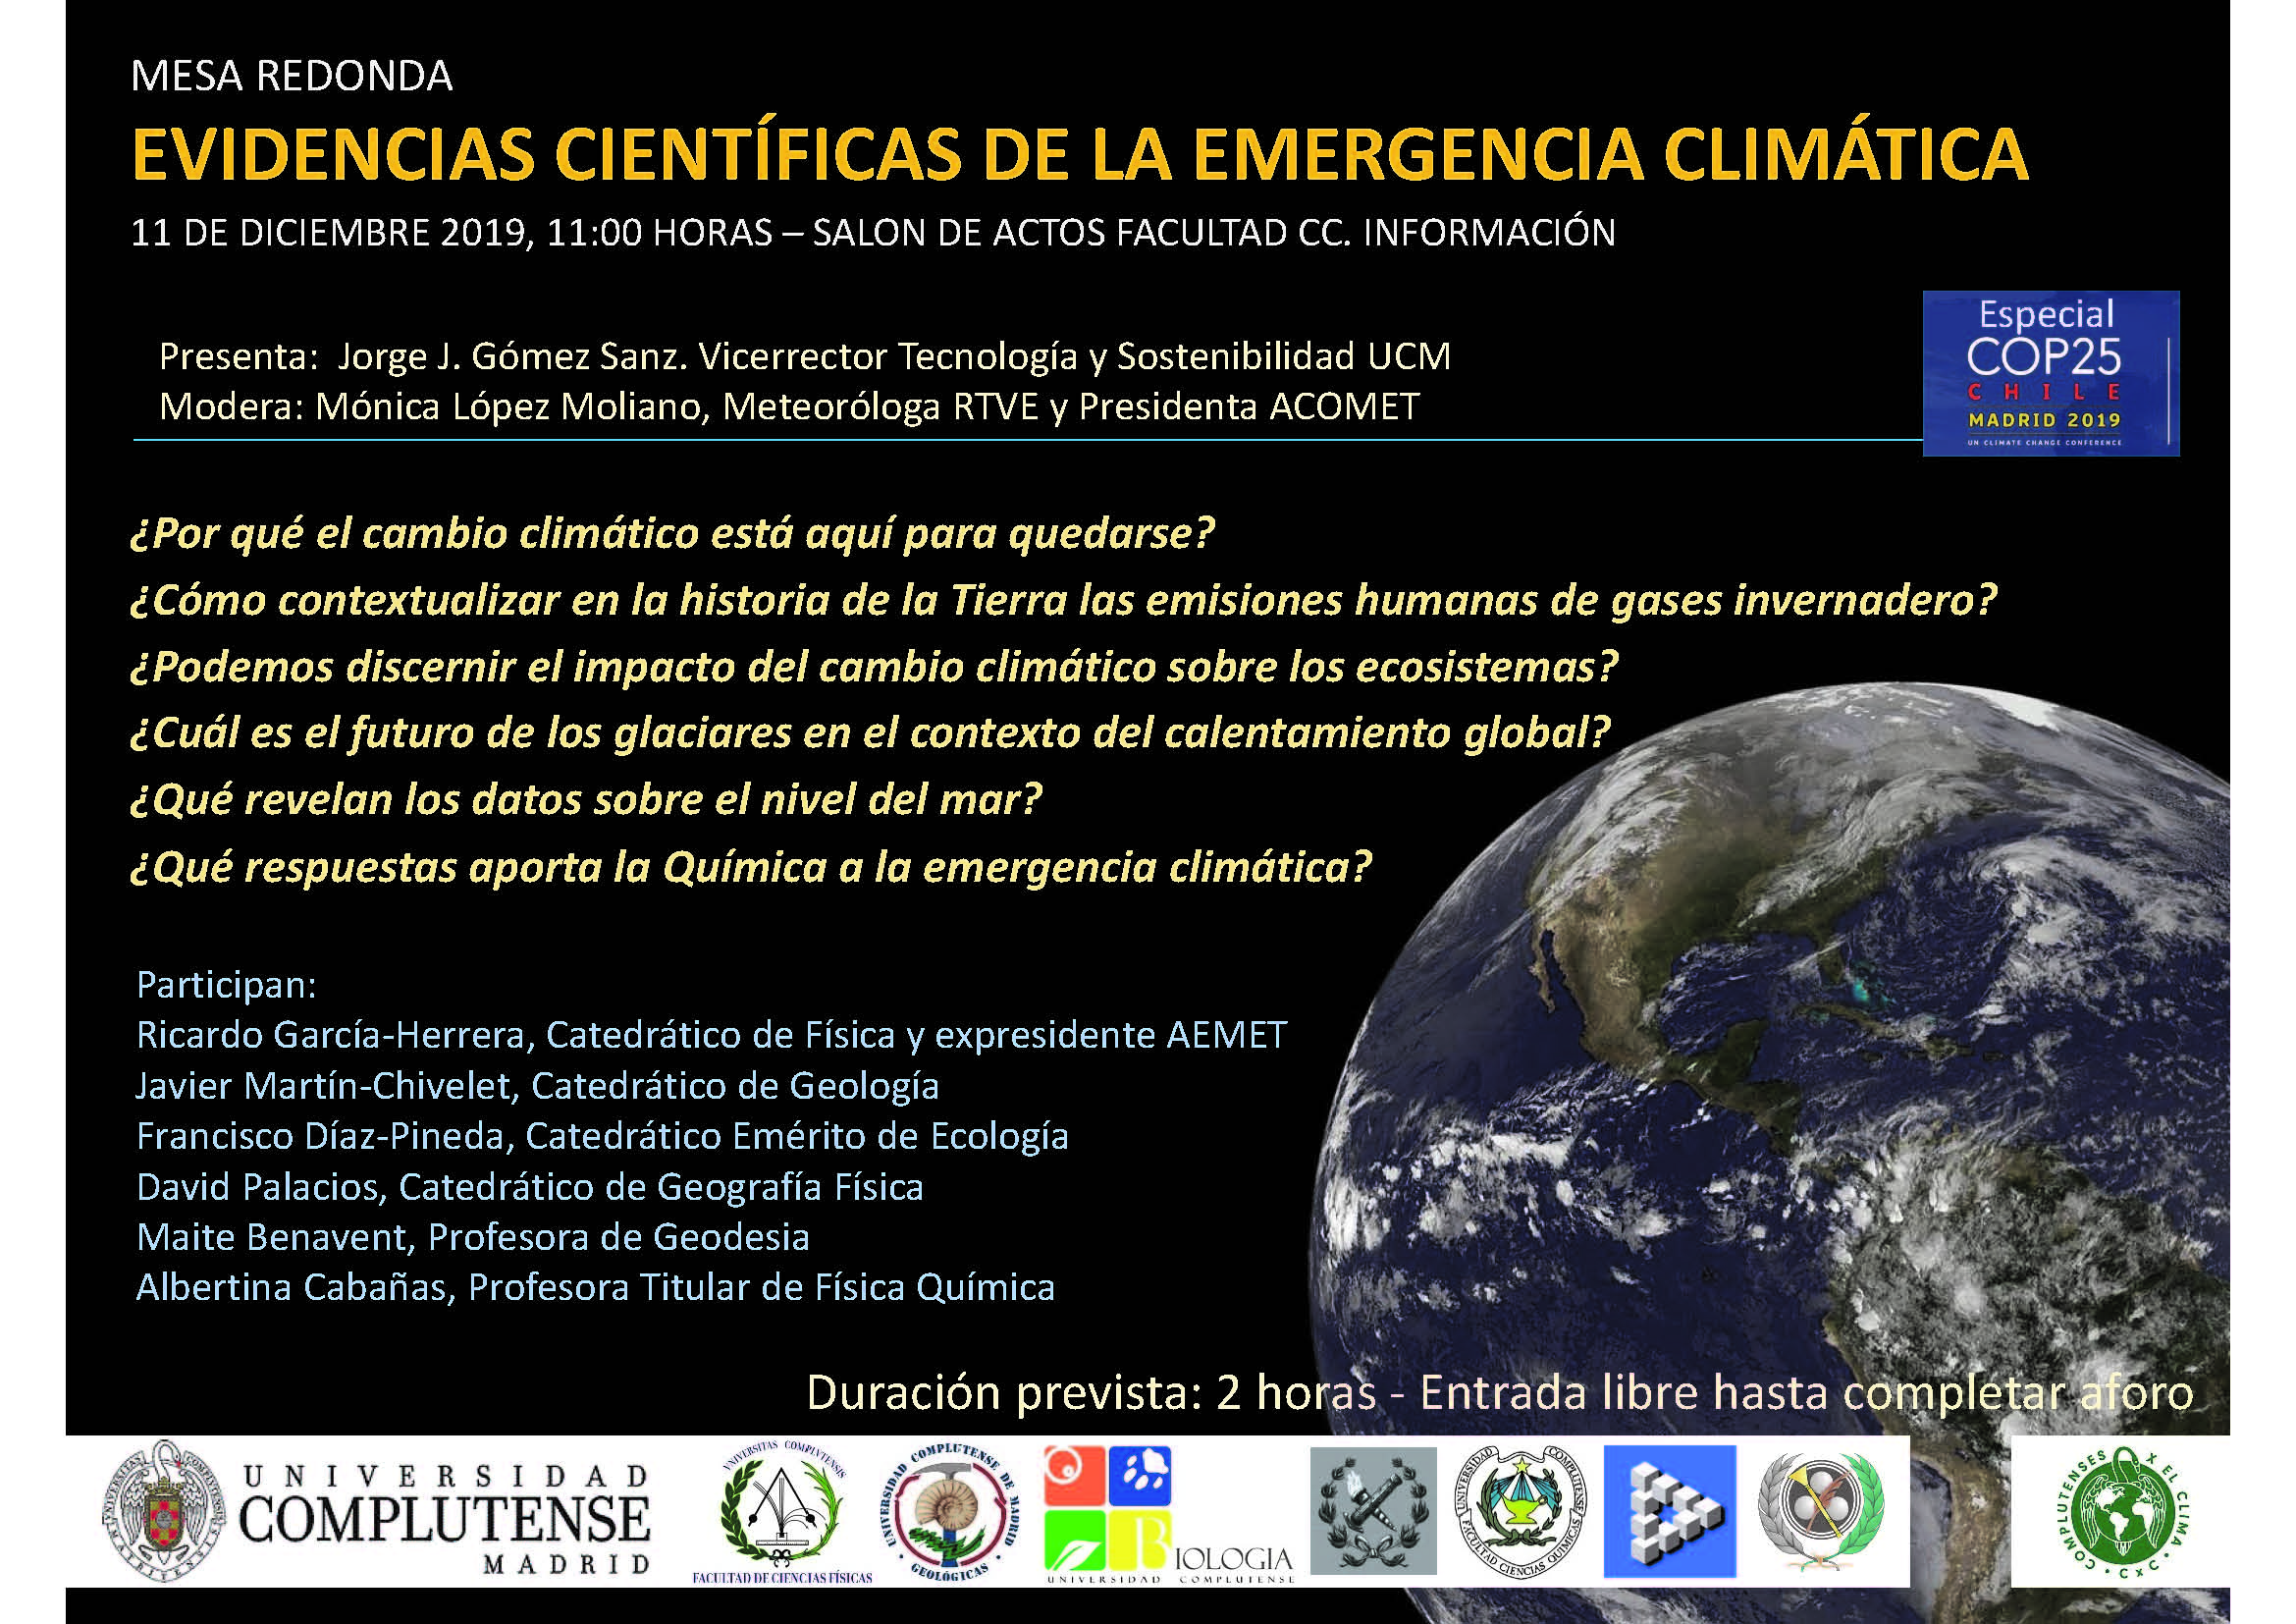 MESA REDONDA EVIDENCIAS CIENTÍFICAS DE LA EMERGENCIA CLIMÁTICA. 11 DE DICIEMBRE 2019, 11:00 HORAS – SALON DE ACTOS FACULTAD CC. INFORMACIÓN